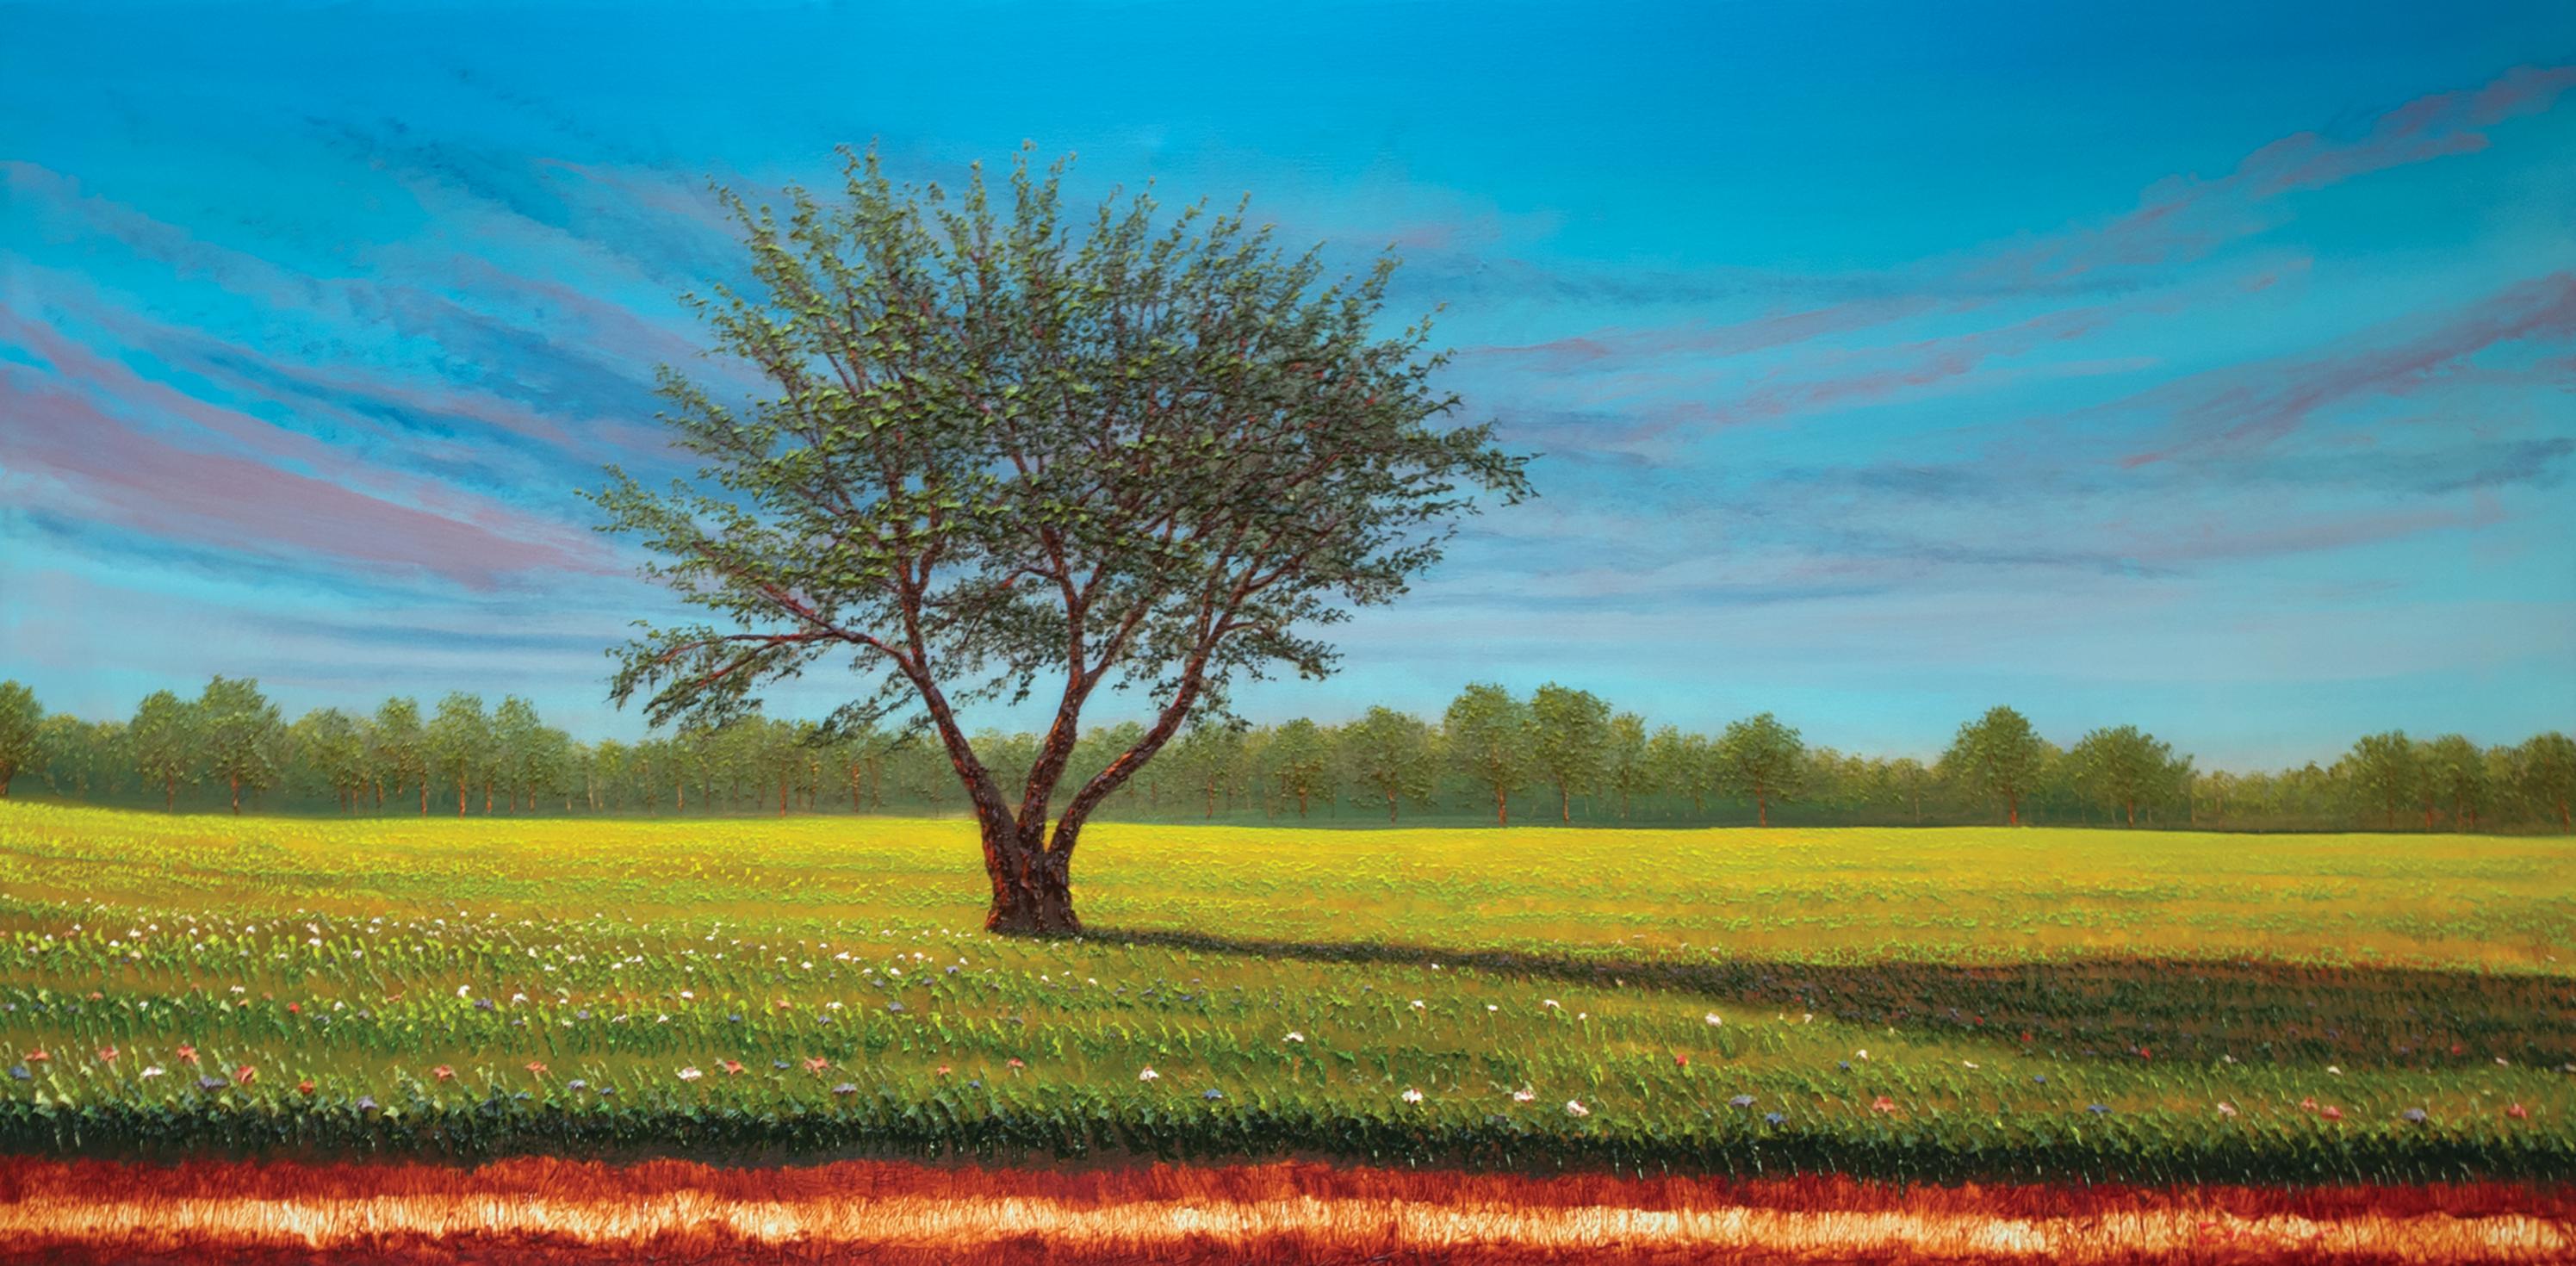 Landscape Painting Gene Pompa - The Dawn of Spring - Peinture italienne Couleurs Bleu, jaune, blanc, vert, rouge et brun